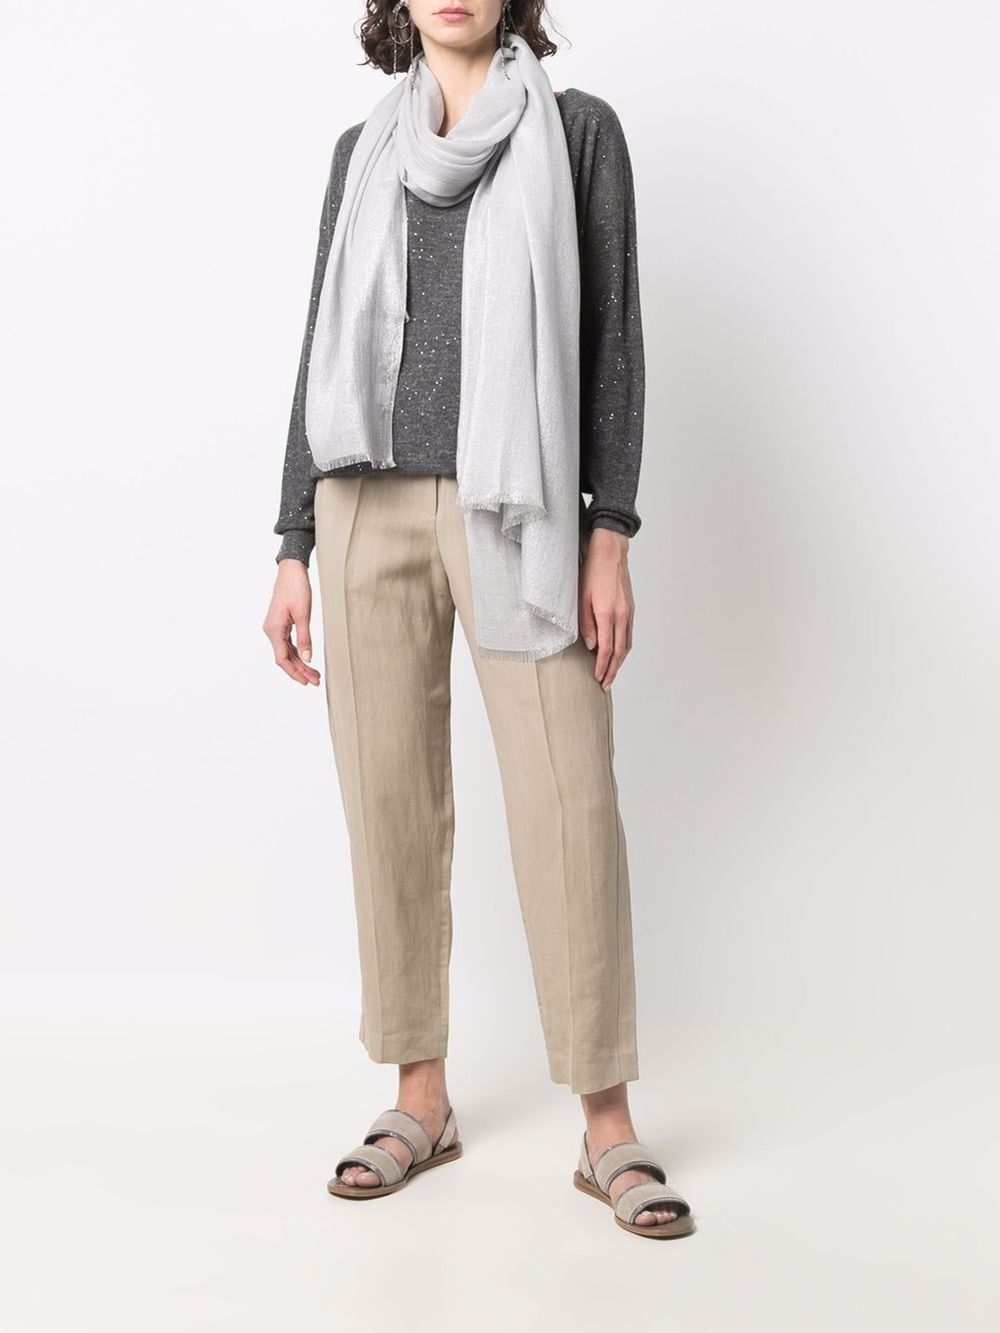 Grey silk/cashmere fringed-edge scarf